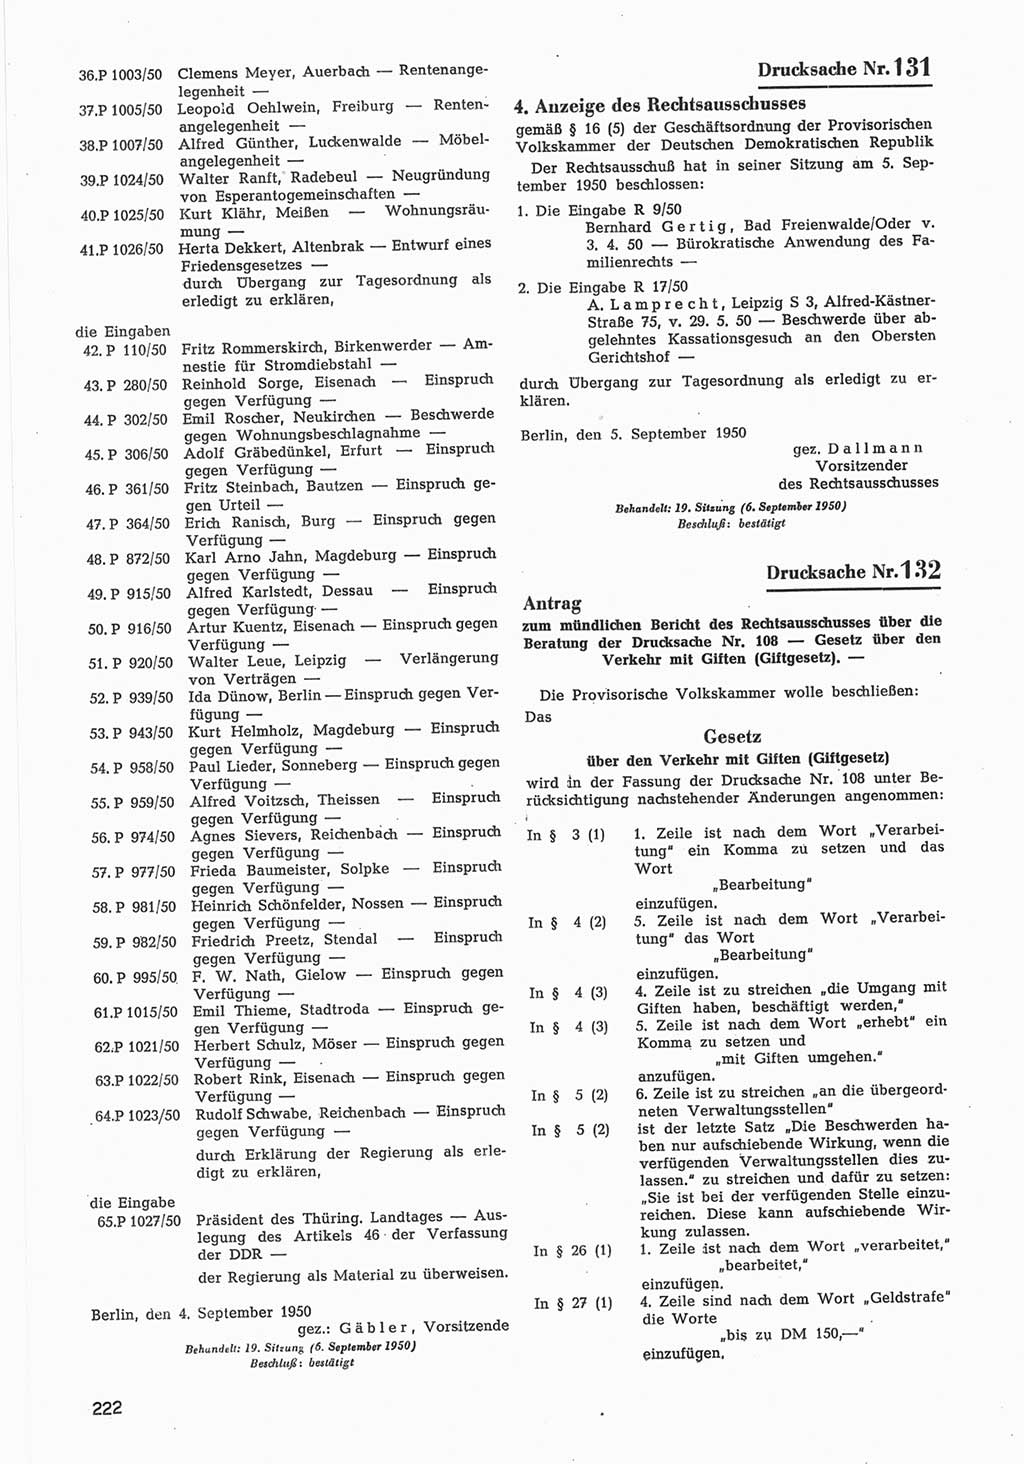 Provisorische Volkskammer (VK) der Deutschen Demokratischen Republik (DDR) 1949-1950, Dokument 824 (Prov. VK DDR 1949-1950, Dok. 824)